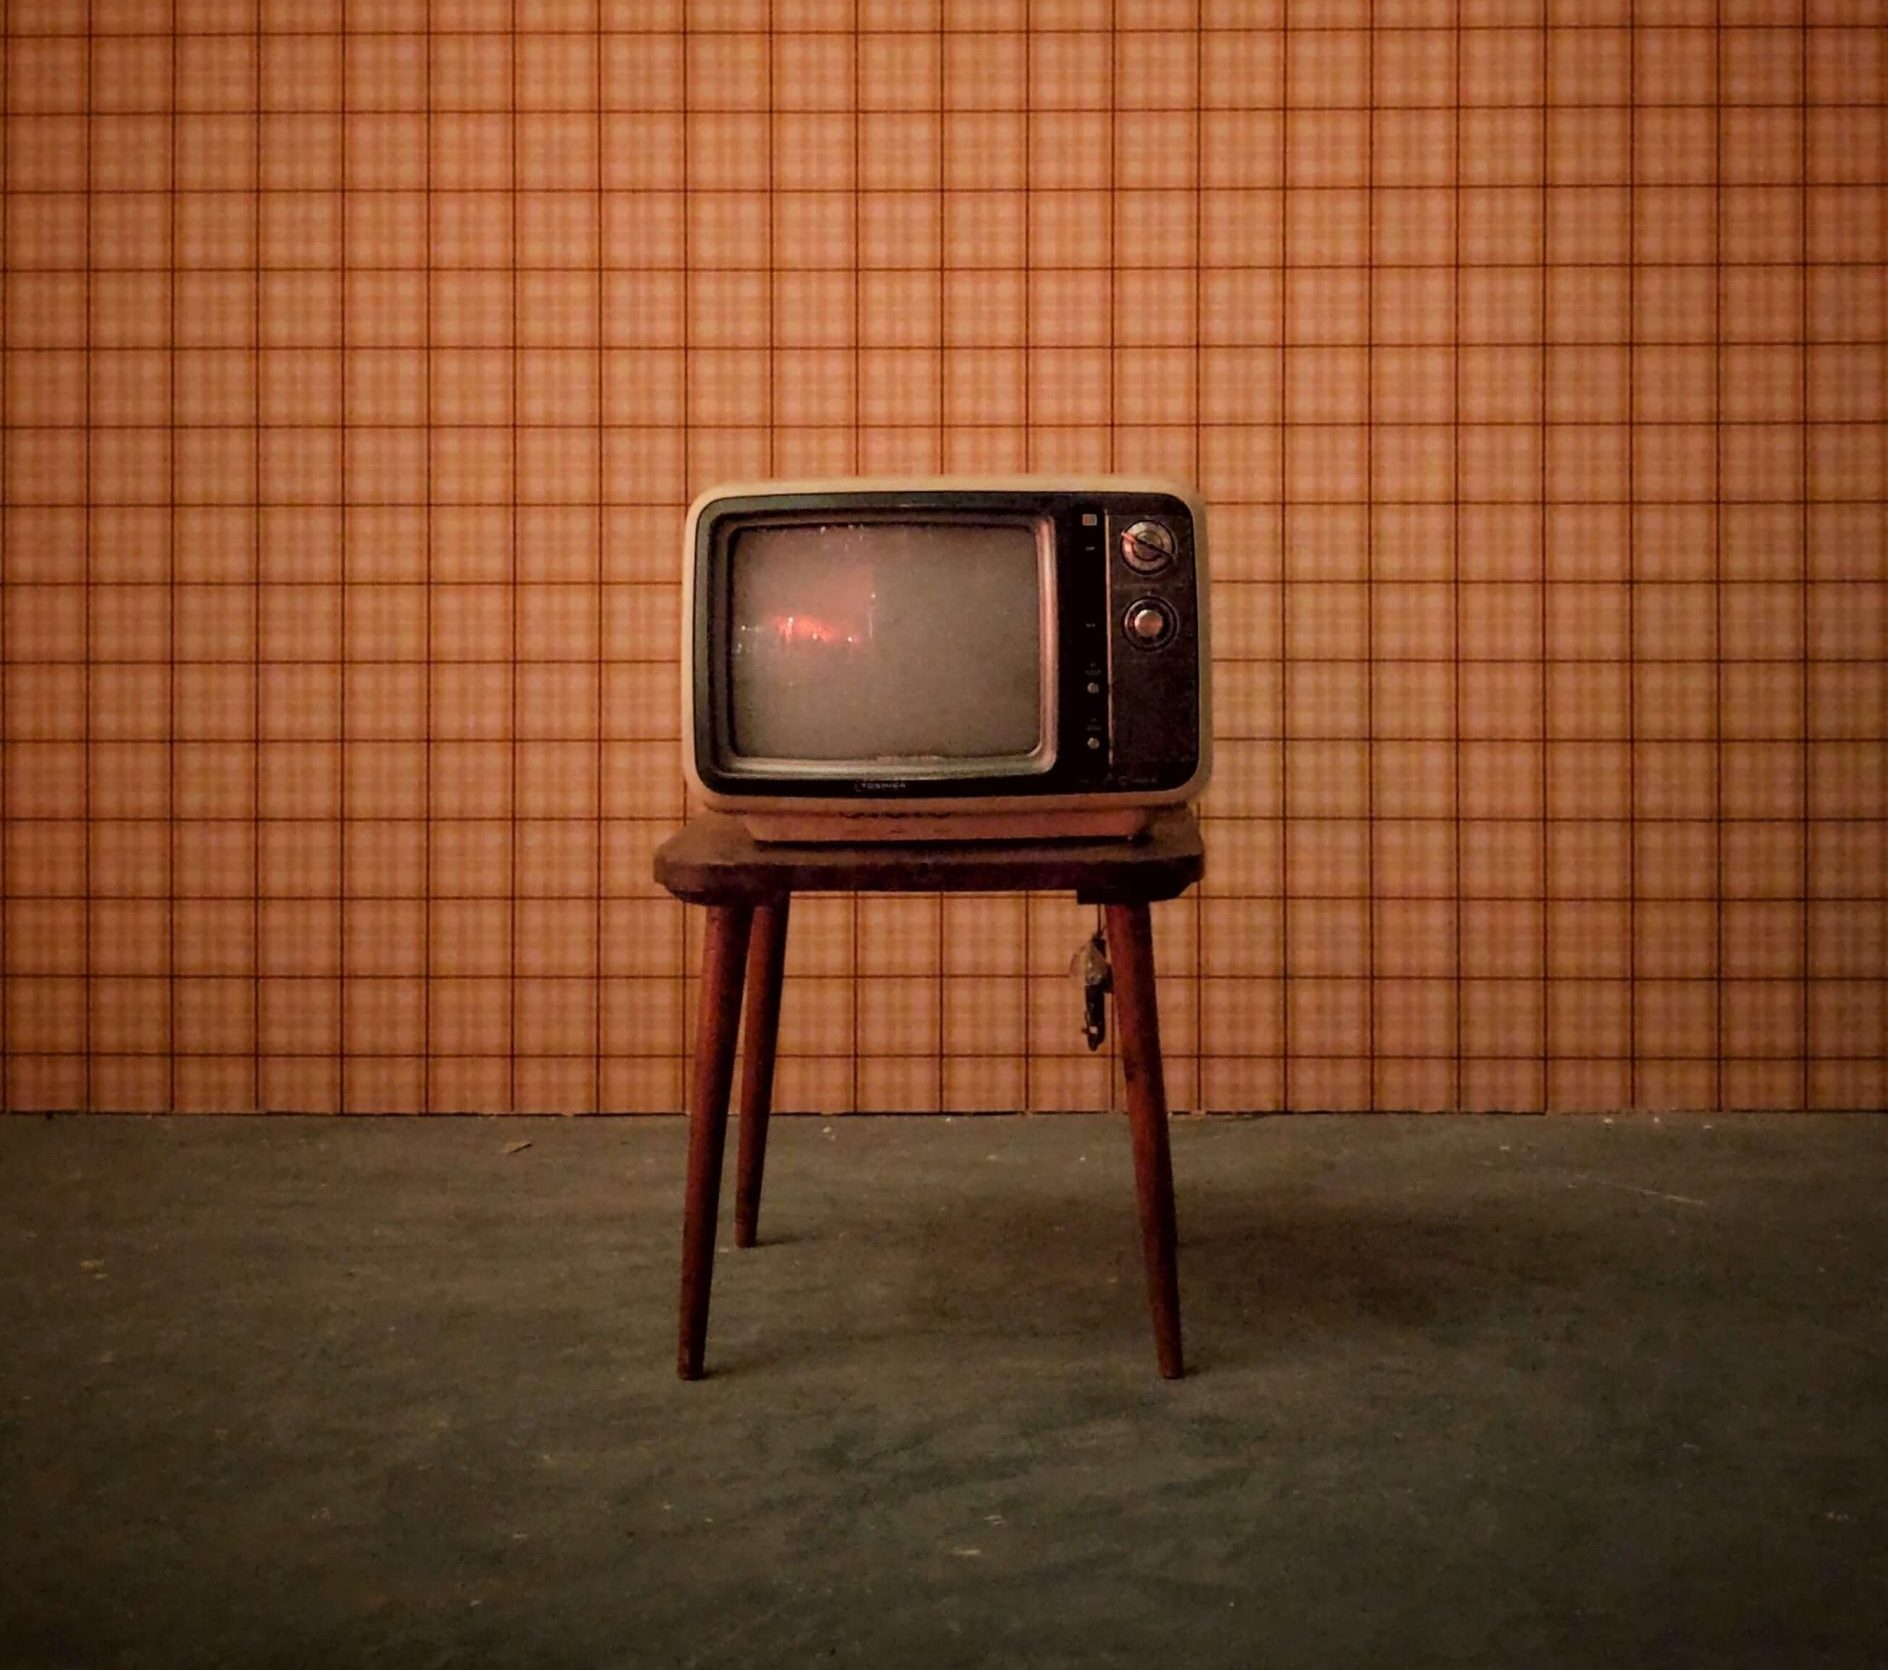 Reuters Studie - wir schauen wieder mehr Fernsehen – vor allem in Krisenzeiten